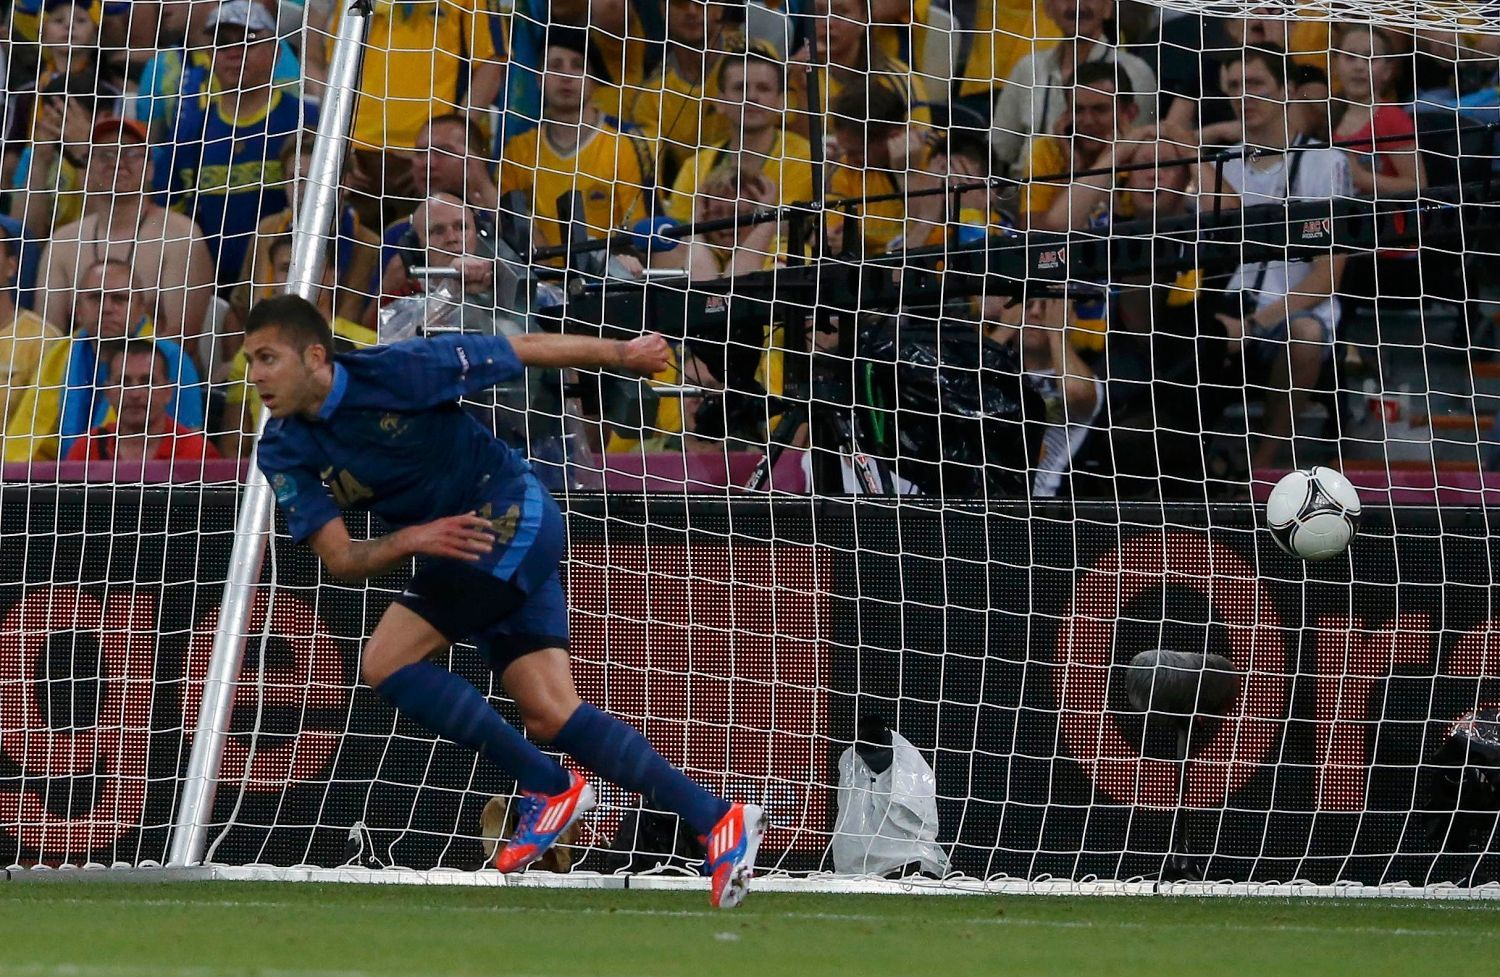 Francouzský fotbalista Jeremy Ménez slaví gól, který však nebyl uznán kvůli off-sidu během utkání s Ukrajinou na Euru 2012